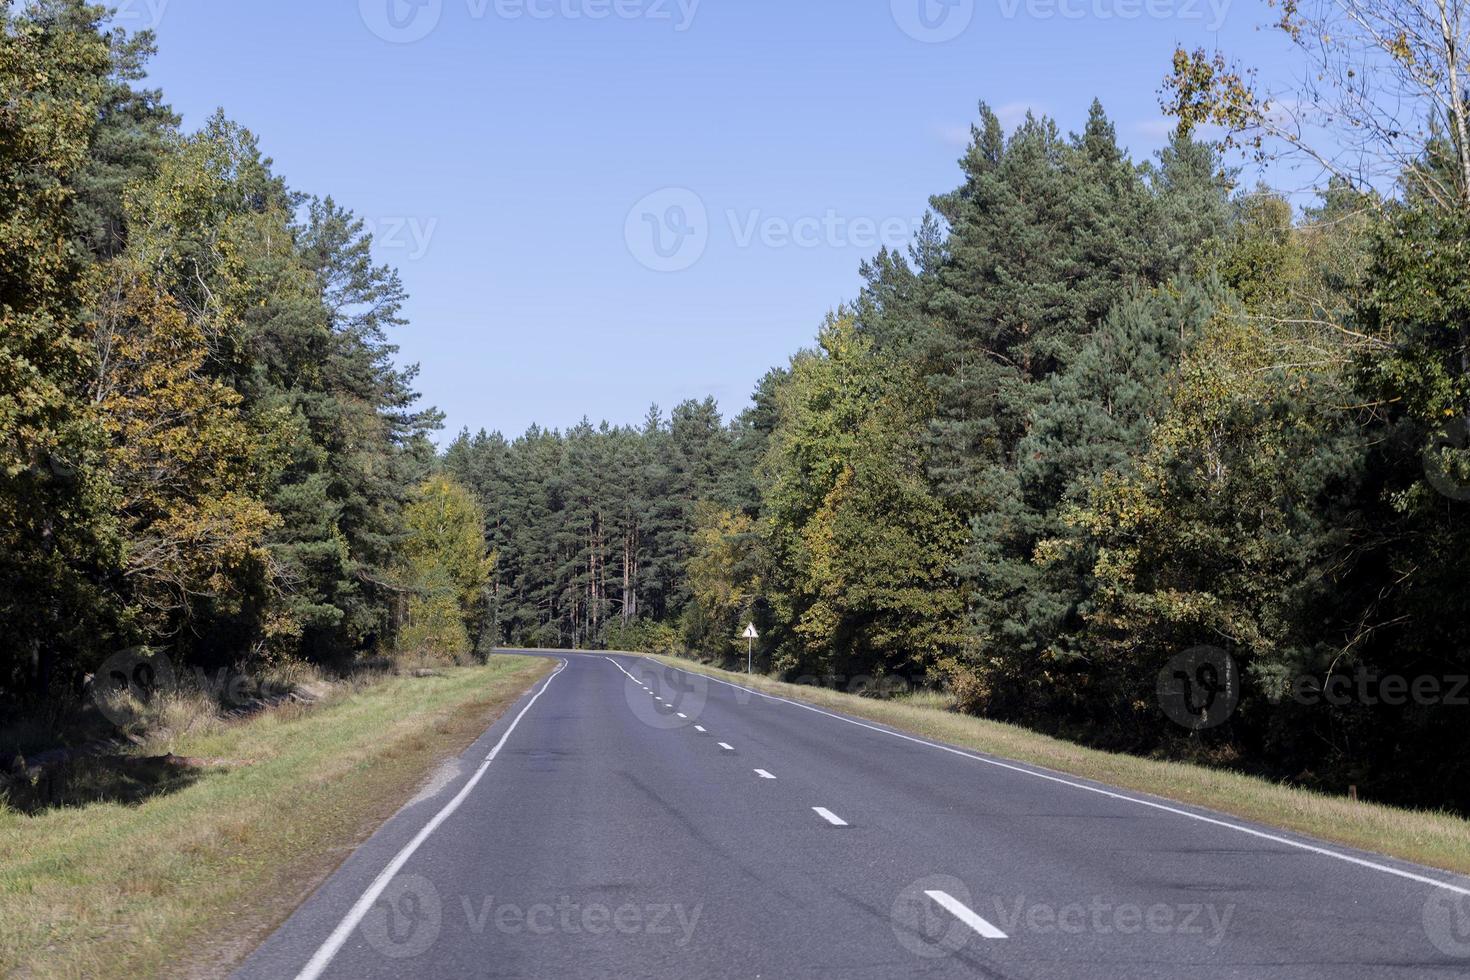 estrada pavimentada na temporada de outono em tempo ensolarado foto